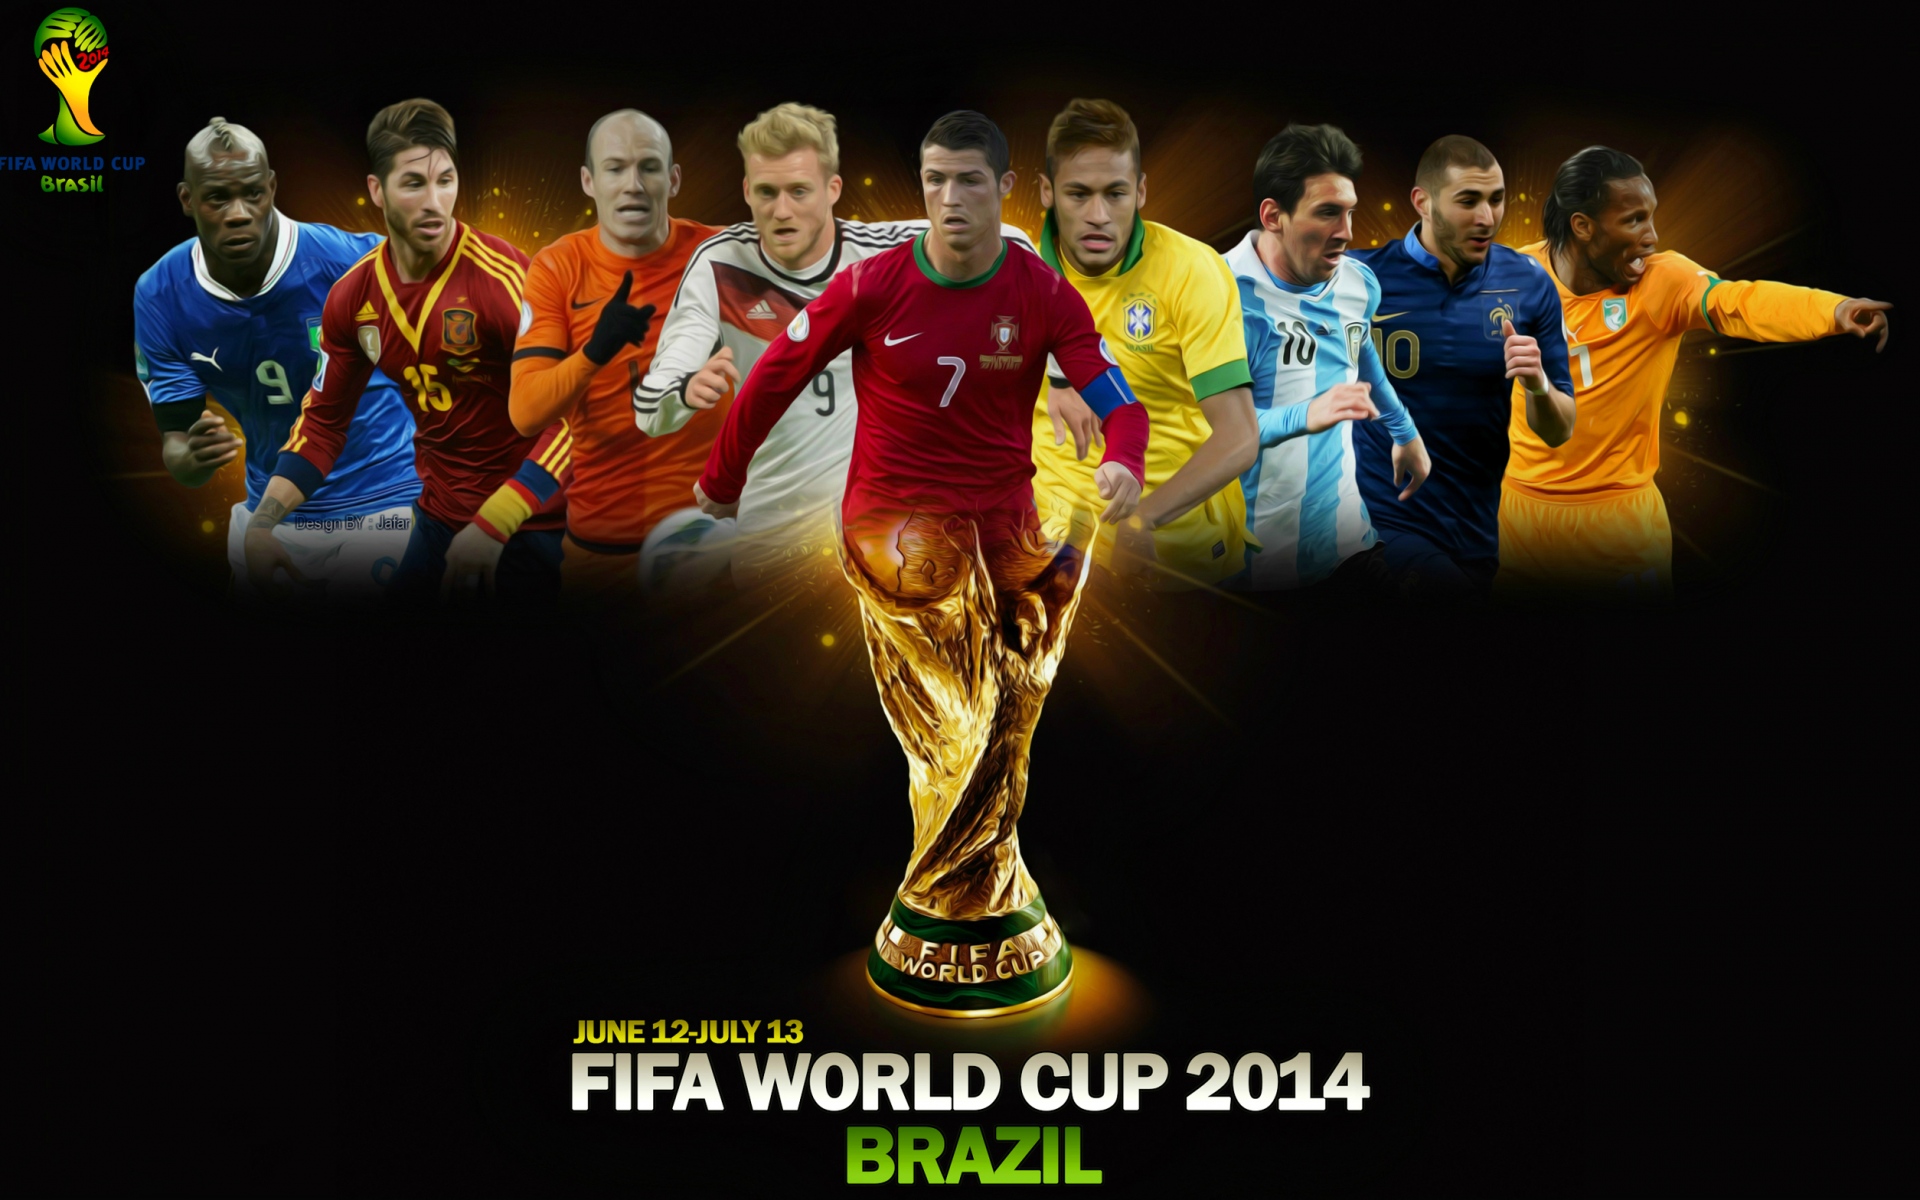 Картинки Чемпионат мира по футболу, Бразилия, 2014, футбол, Кубок мира, плакат фото и обои на рабочий стол